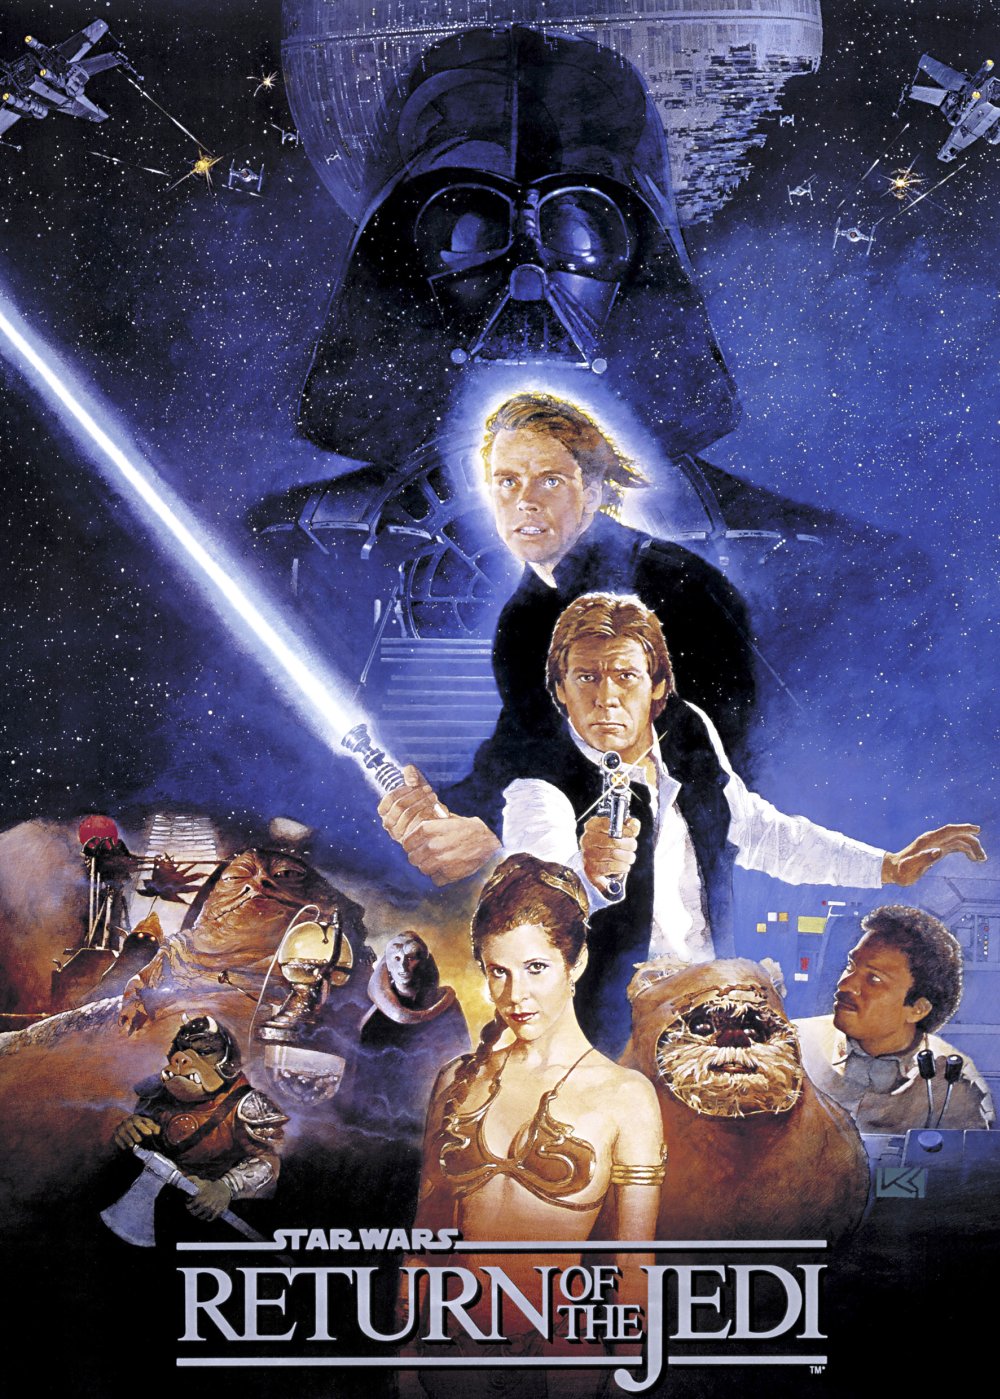 Star Wars Posters / Wallpaper Reggies Take.com